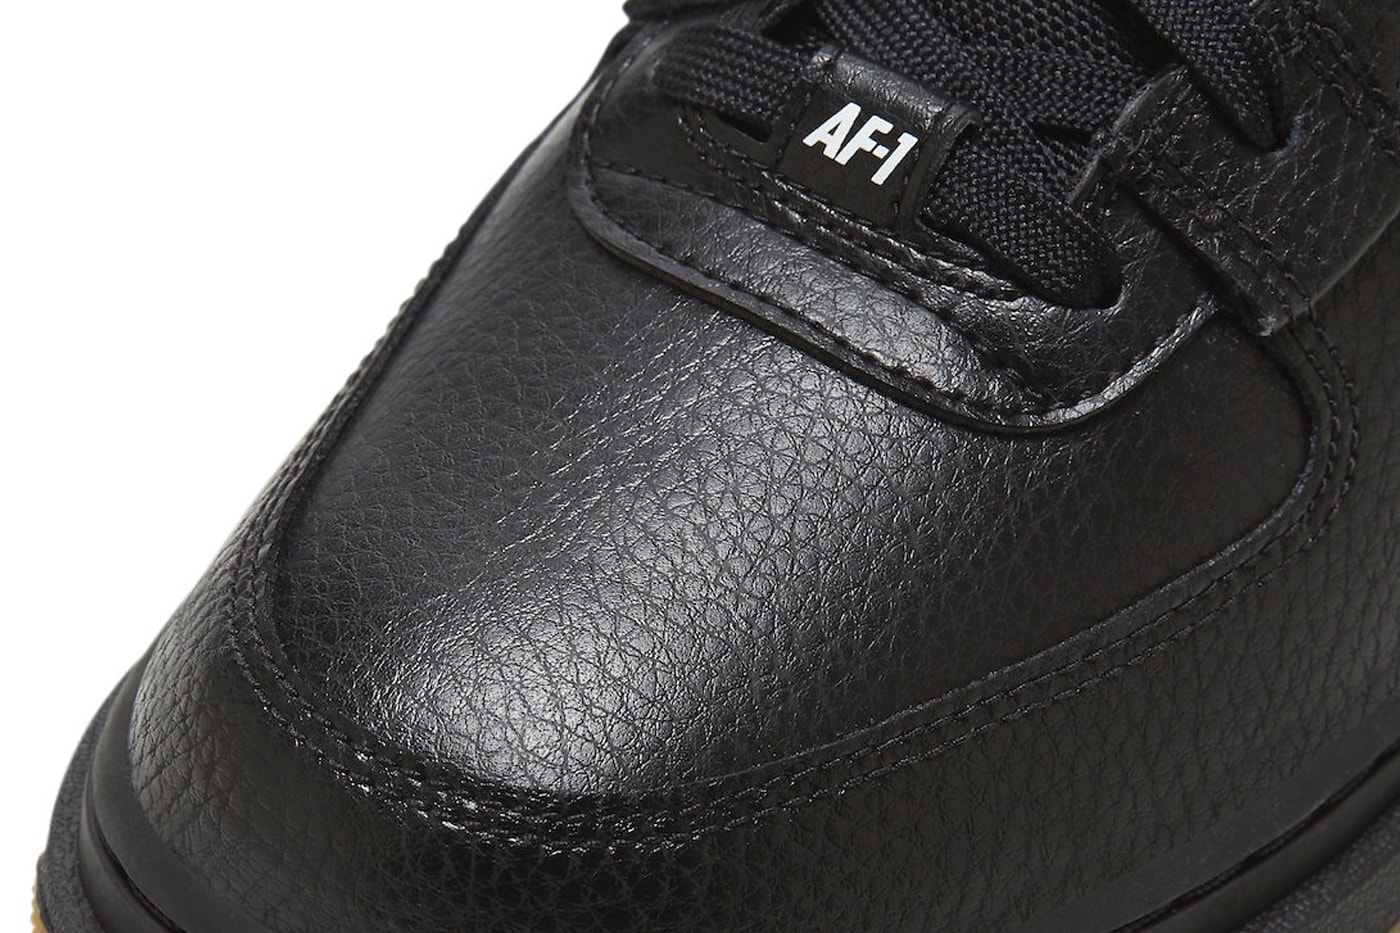 ナイキから エアフォース 1 に機能的なディテールを追加した最新モデル ユーティリティ ハイ 2.0 “ブラック ガム” が登場 Nike Air Force 1 High Utility 2.0 in "Black Gum" Release Date footwear sneakers swoosh leather mesh suede black white Gum Red Brown orange